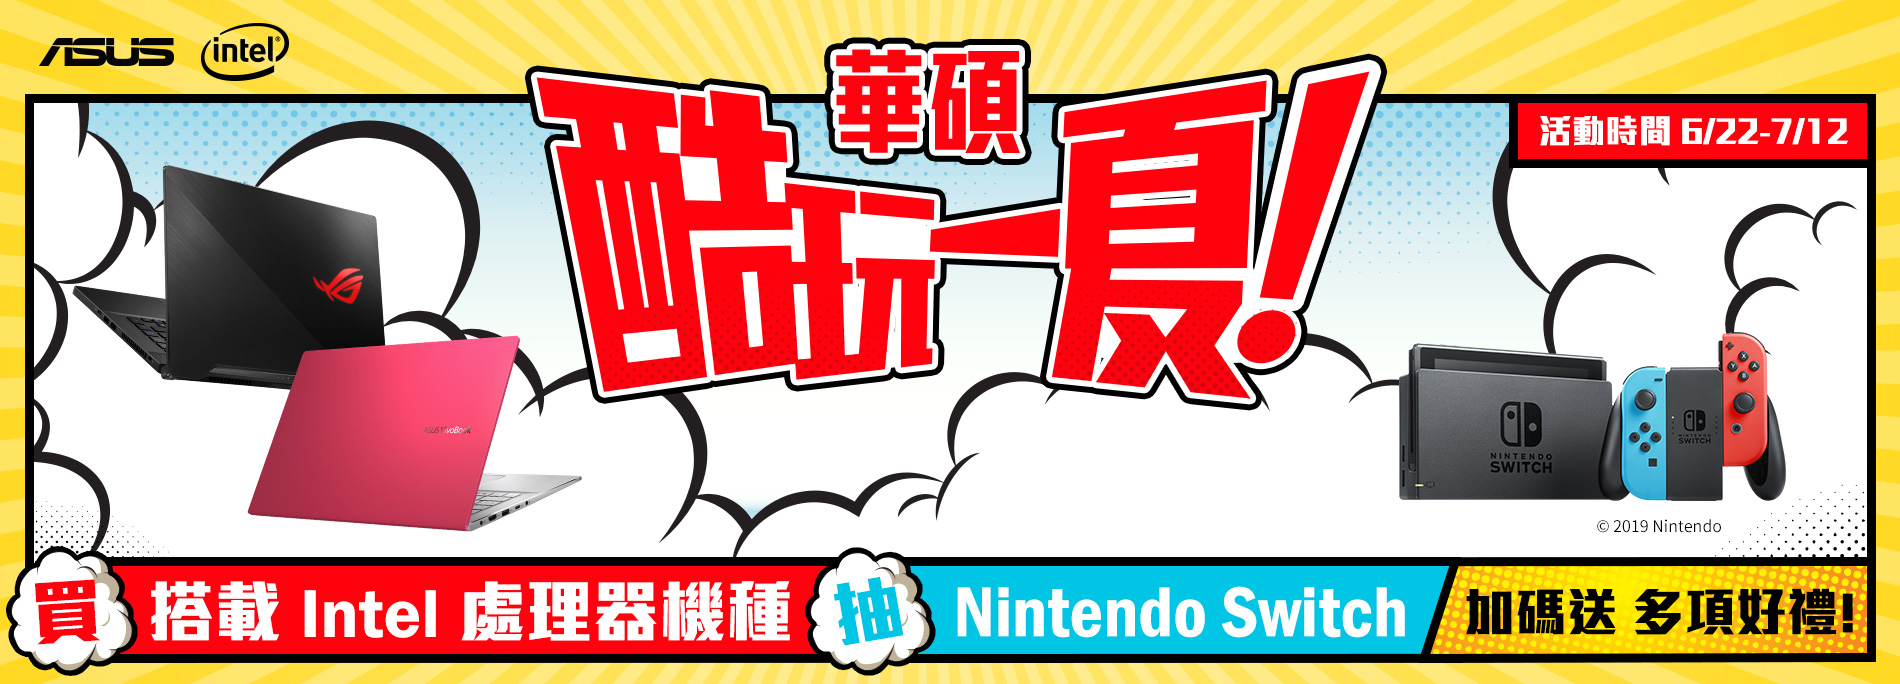 華碩酷玩一夏 購機抽Nintendo Switch遊戲主機，再送多項好禮